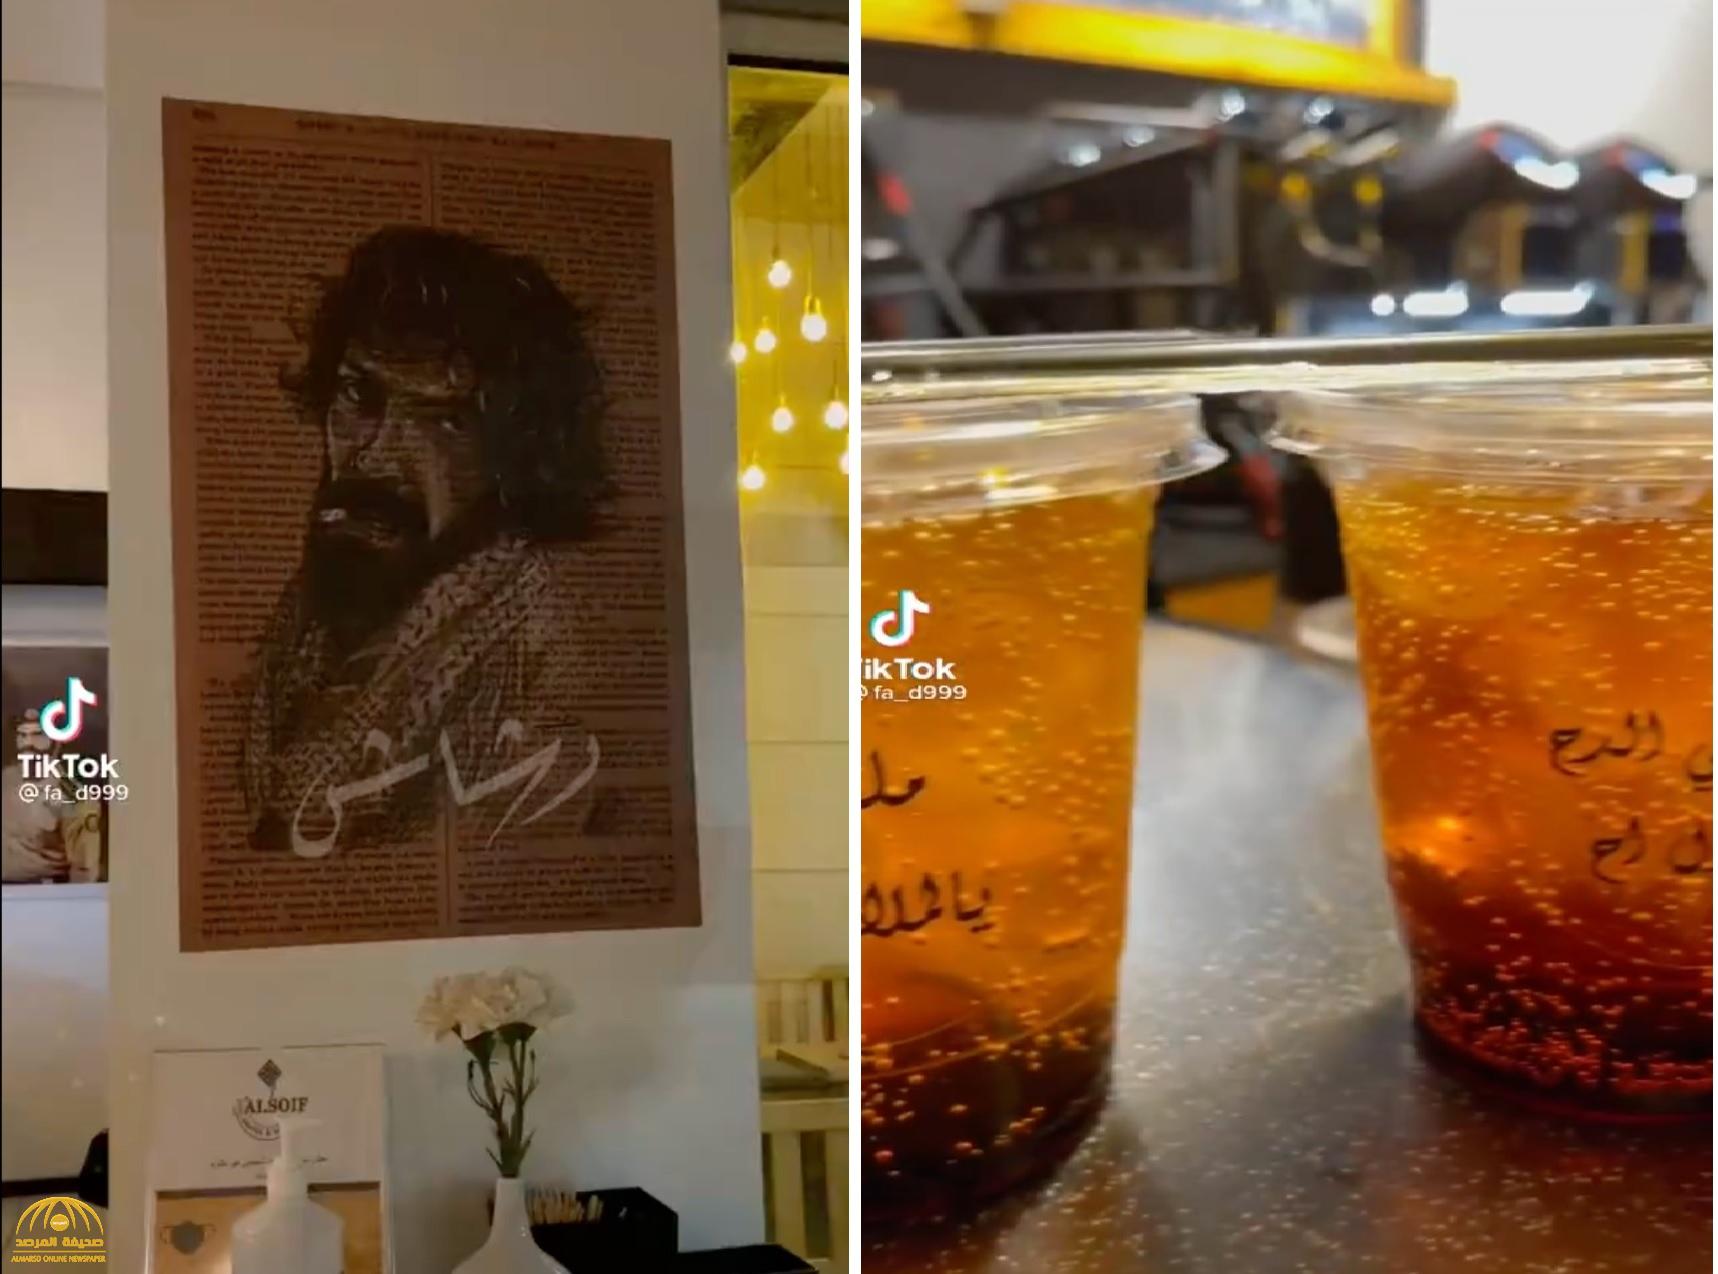 شاهد .. مقهى غريب  يعلق صور شخصيات مسلسل "رشاش" داخل المحل ويضع عبارة "ملغم يالملاعين"على الأكواب!